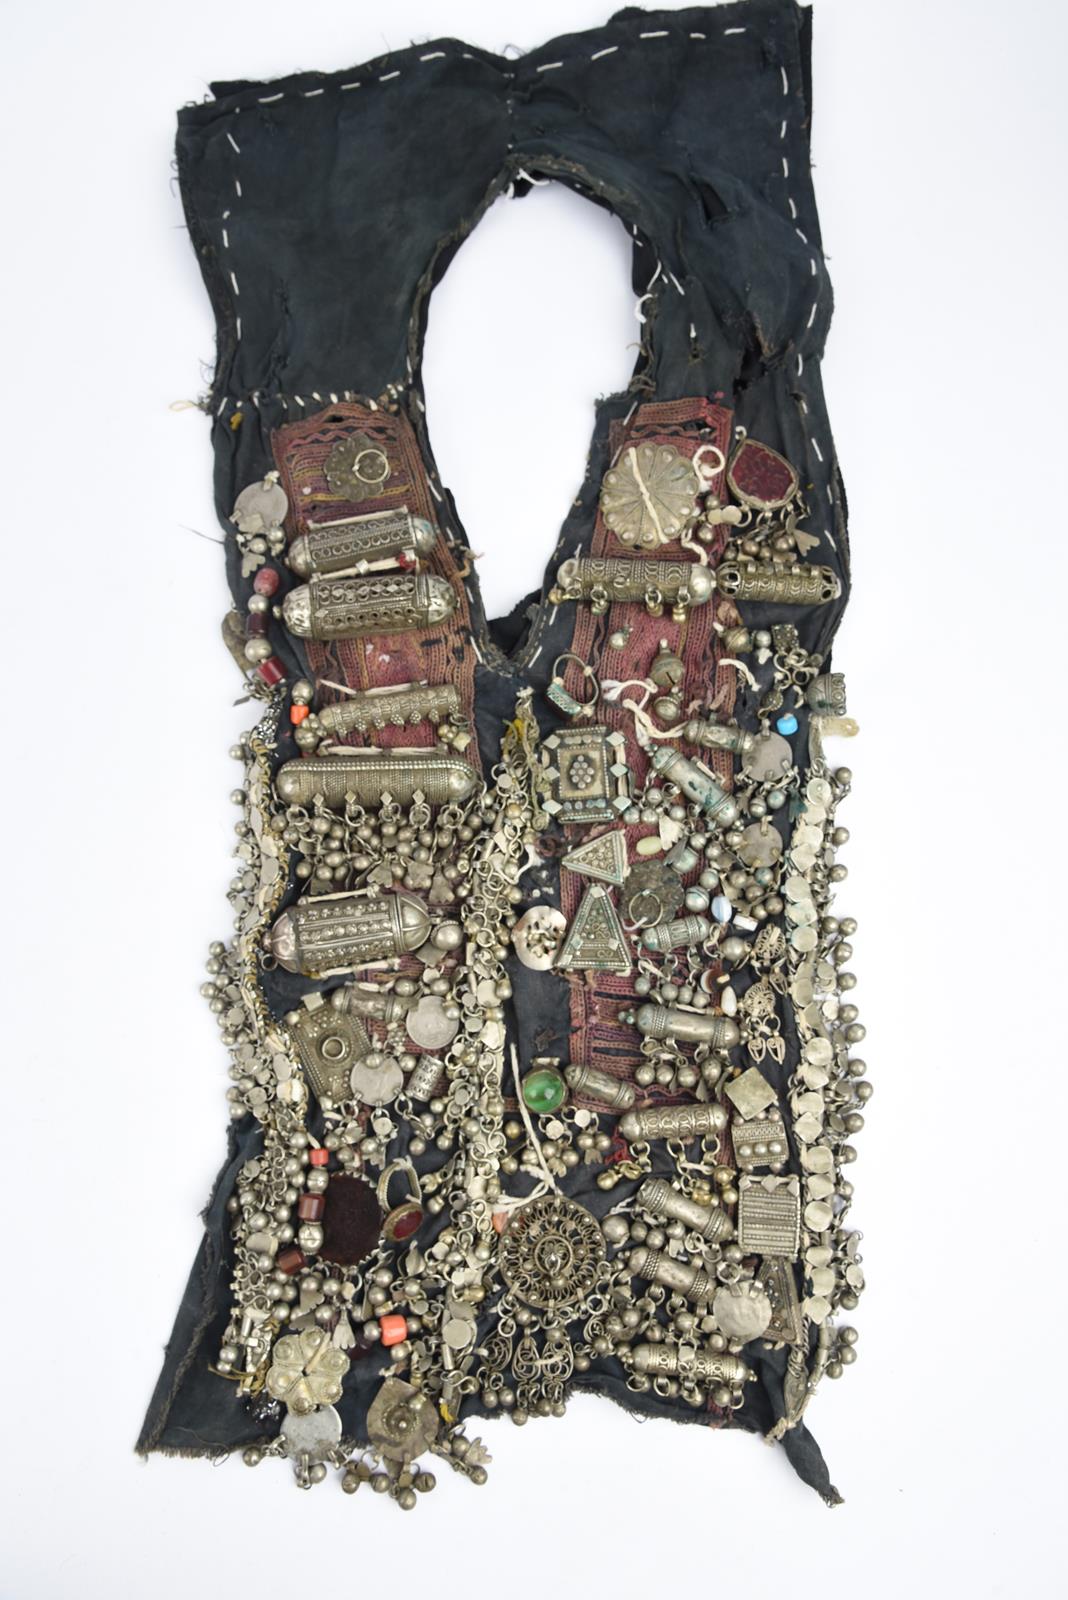 λA Bedouin amulet chest ornament cloth with numerous sewn on amulets and beads, 62cm long, and three - Bild 22 aus 27